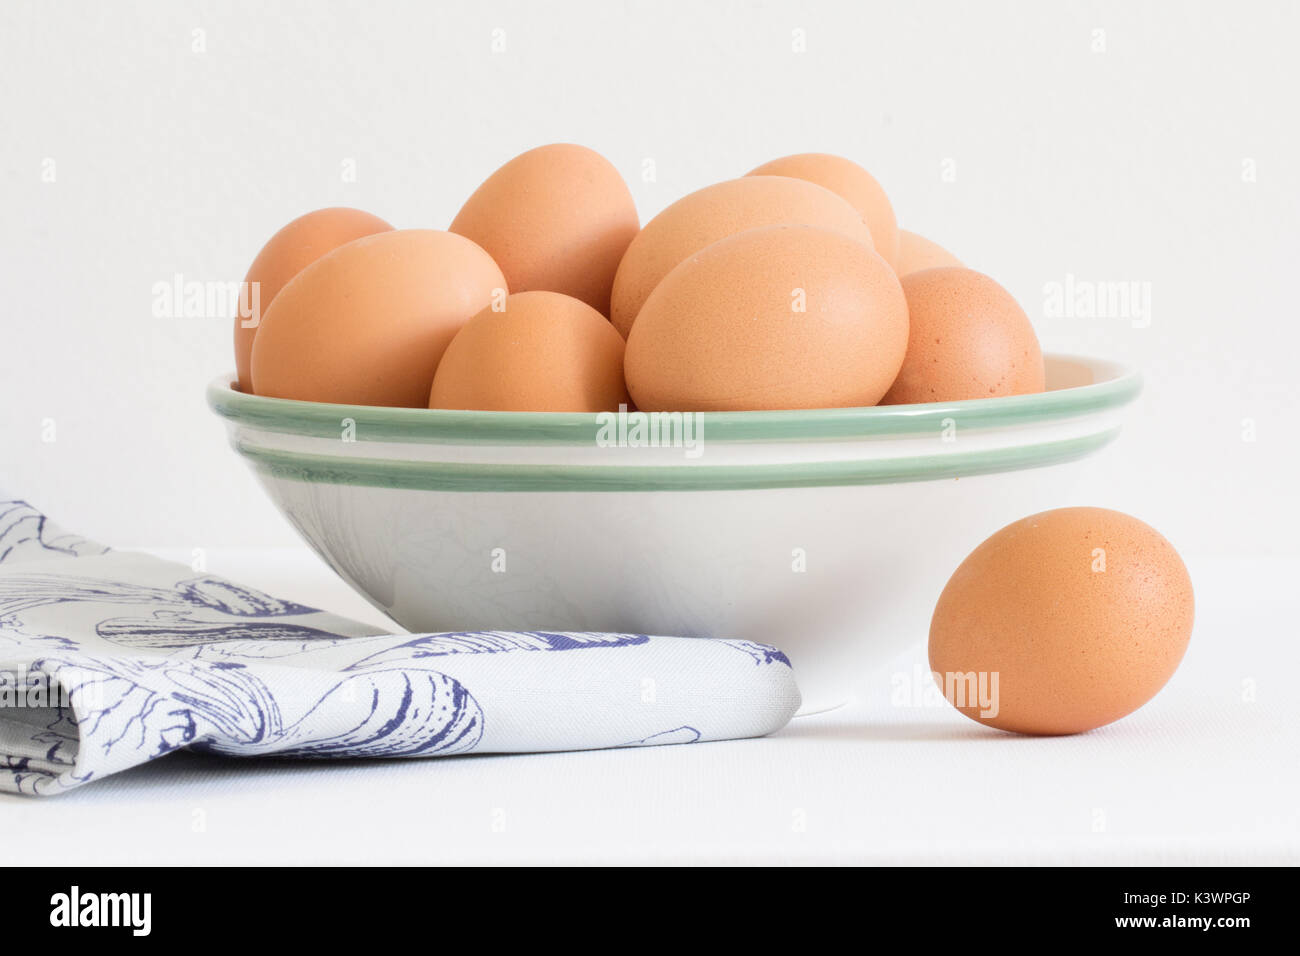 Los huevos de pollo crudo en tazón blanco Foto de stock